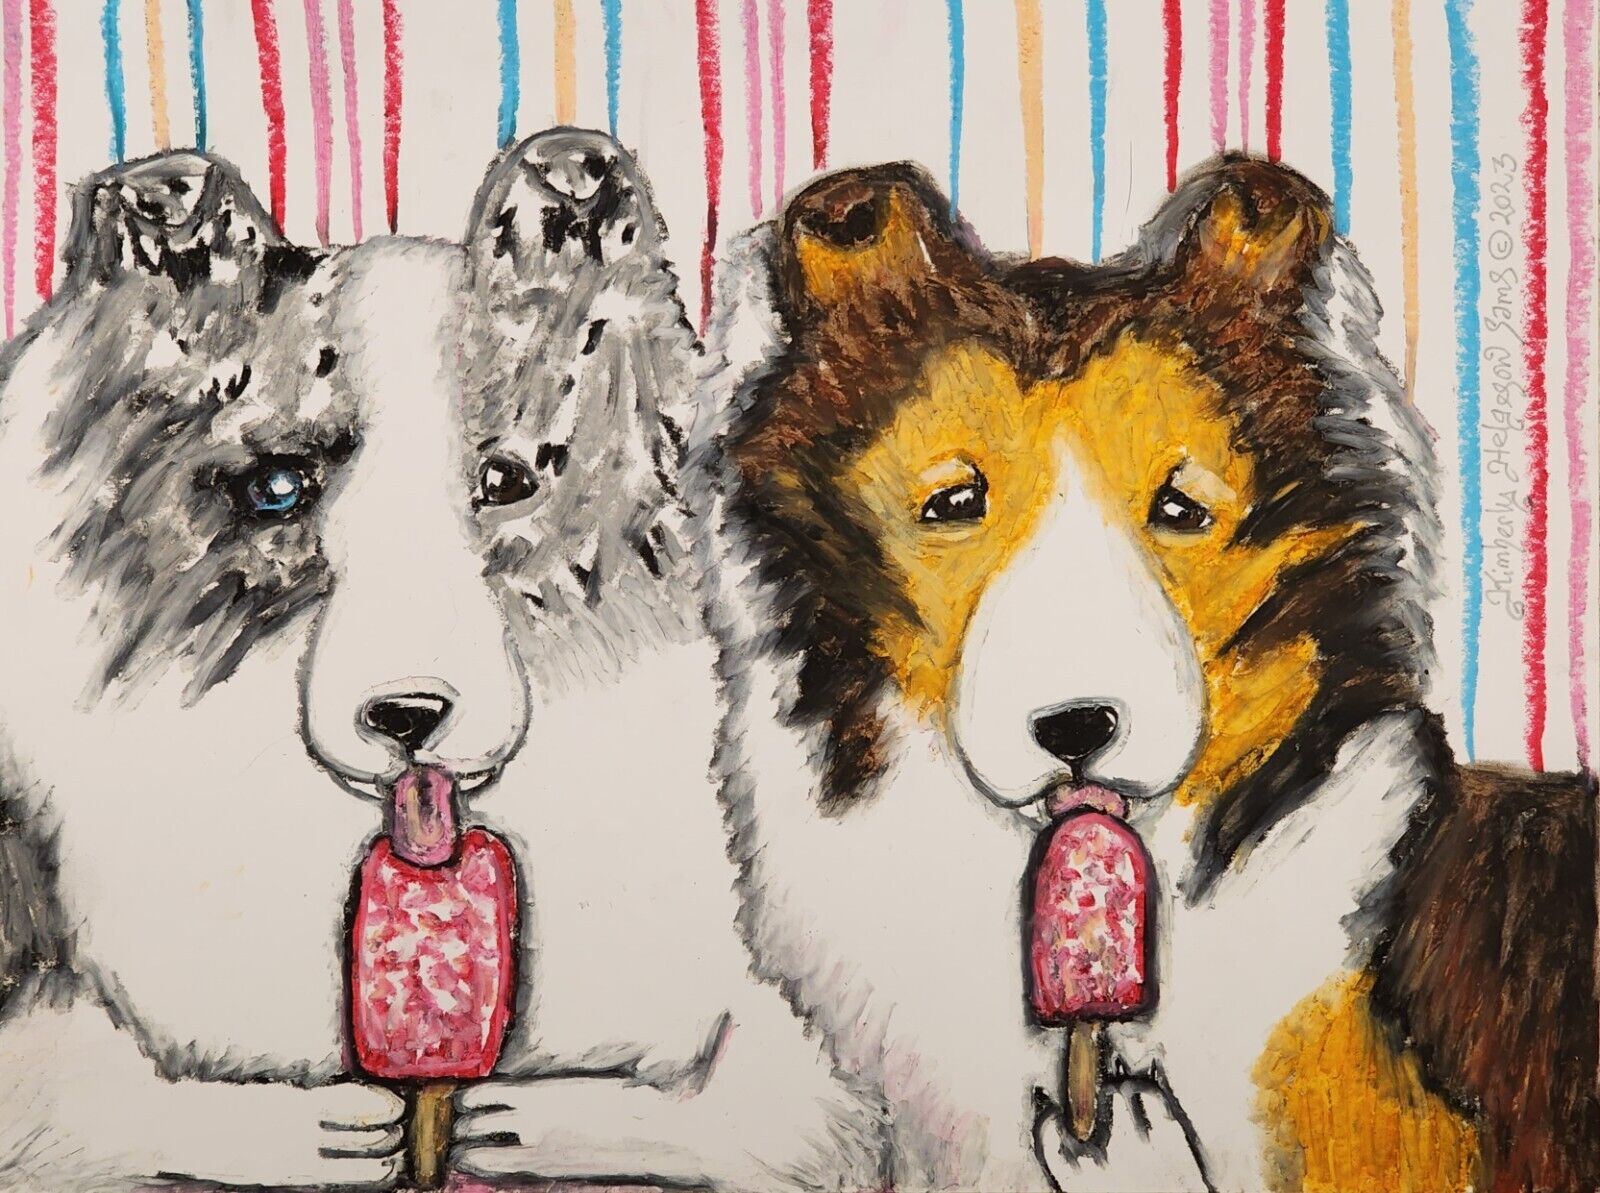 SHELTIE licking popsicle Art Print Signed by Artist KSams 8x10 Shetland Sheepdog